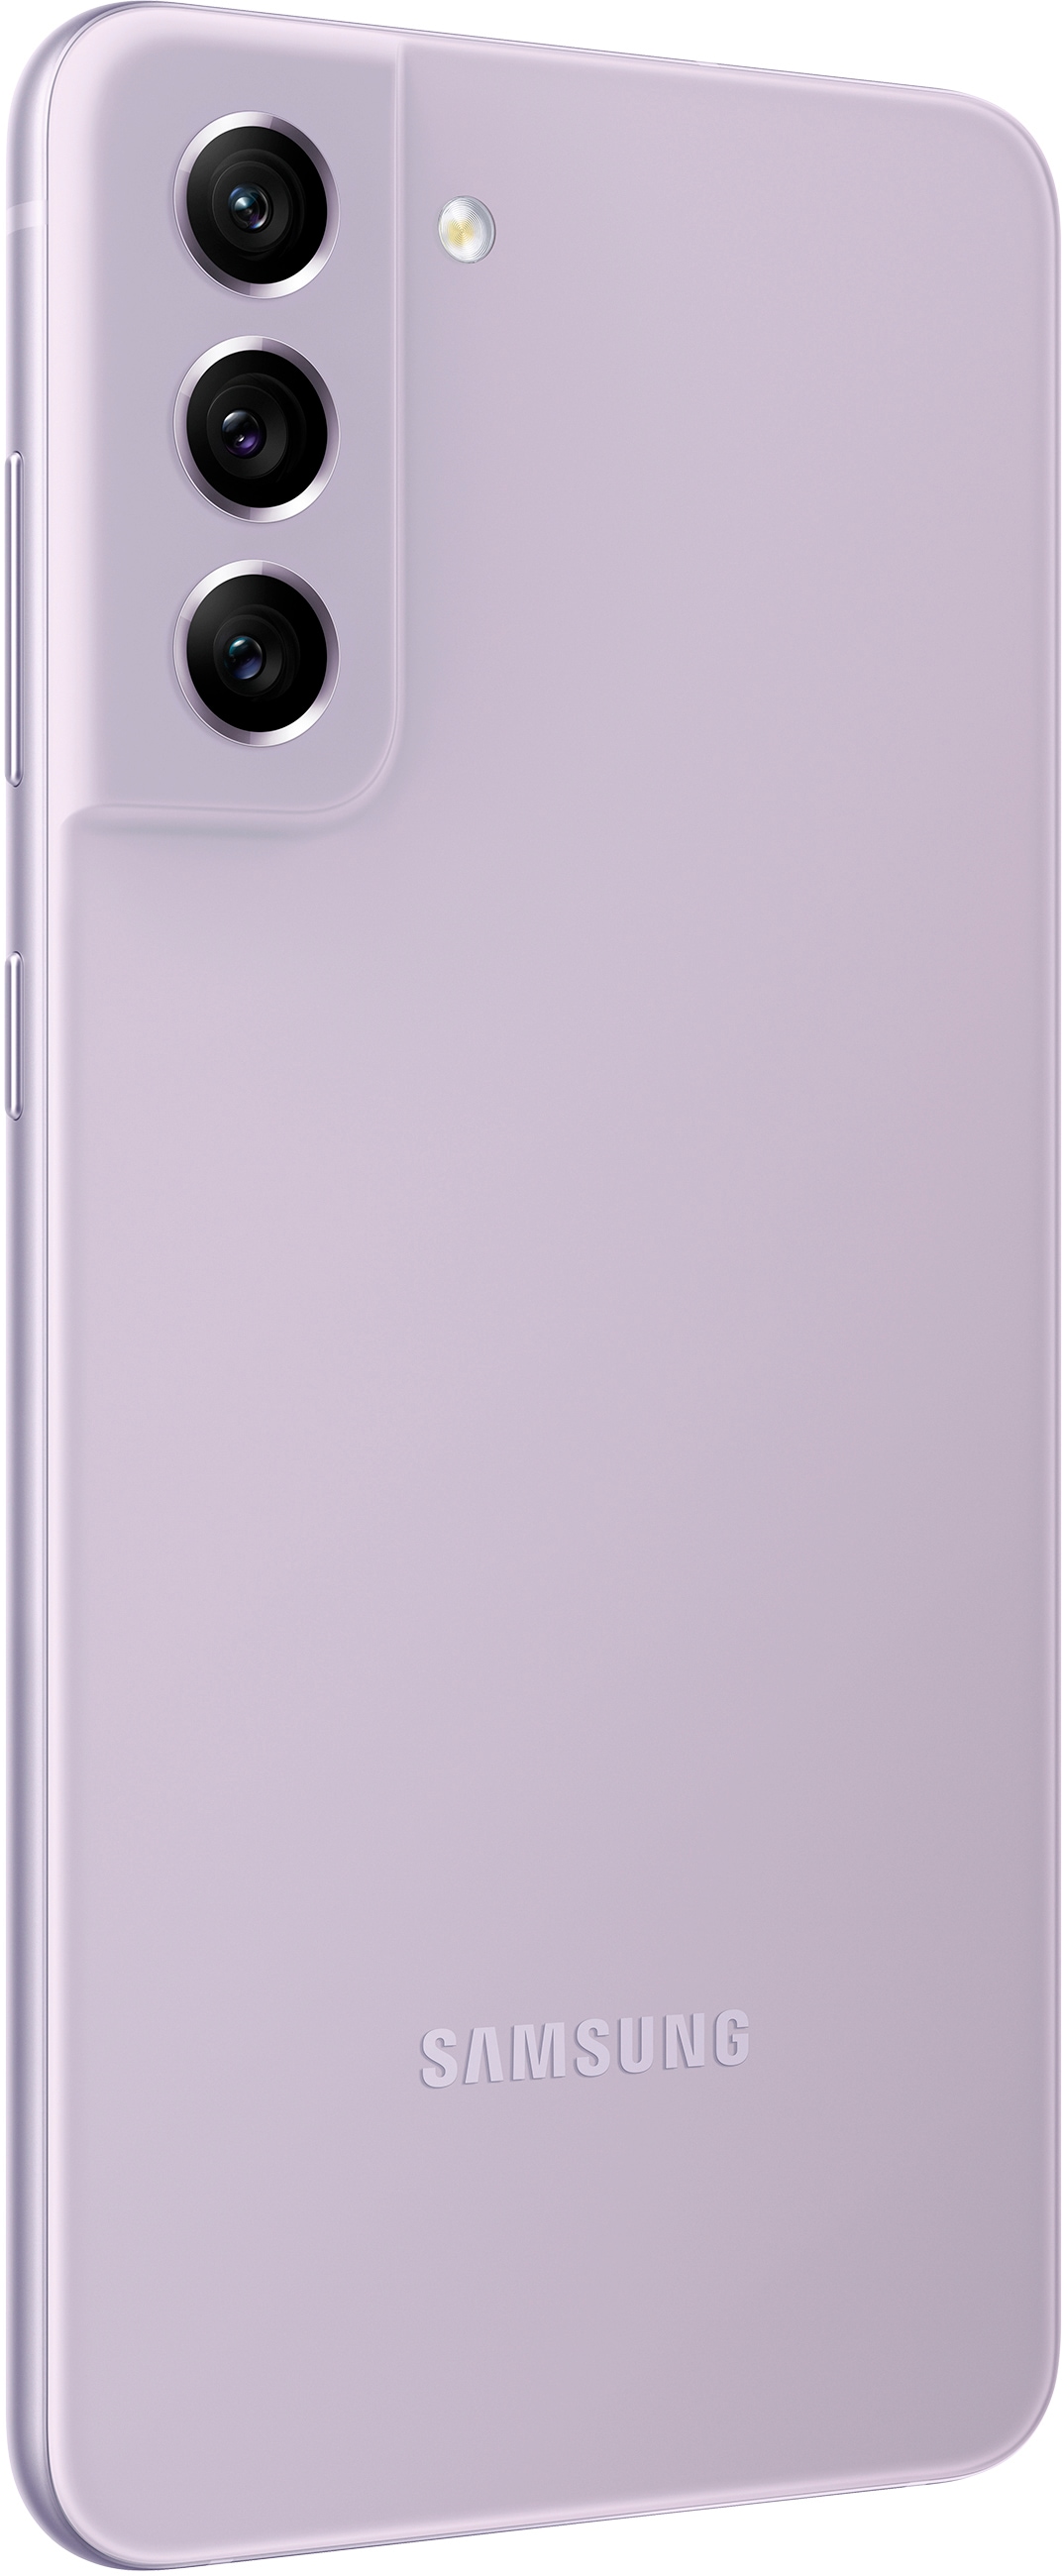 SAMSUNG Galaxy S21 FE 5G, 256 GB, Lavender